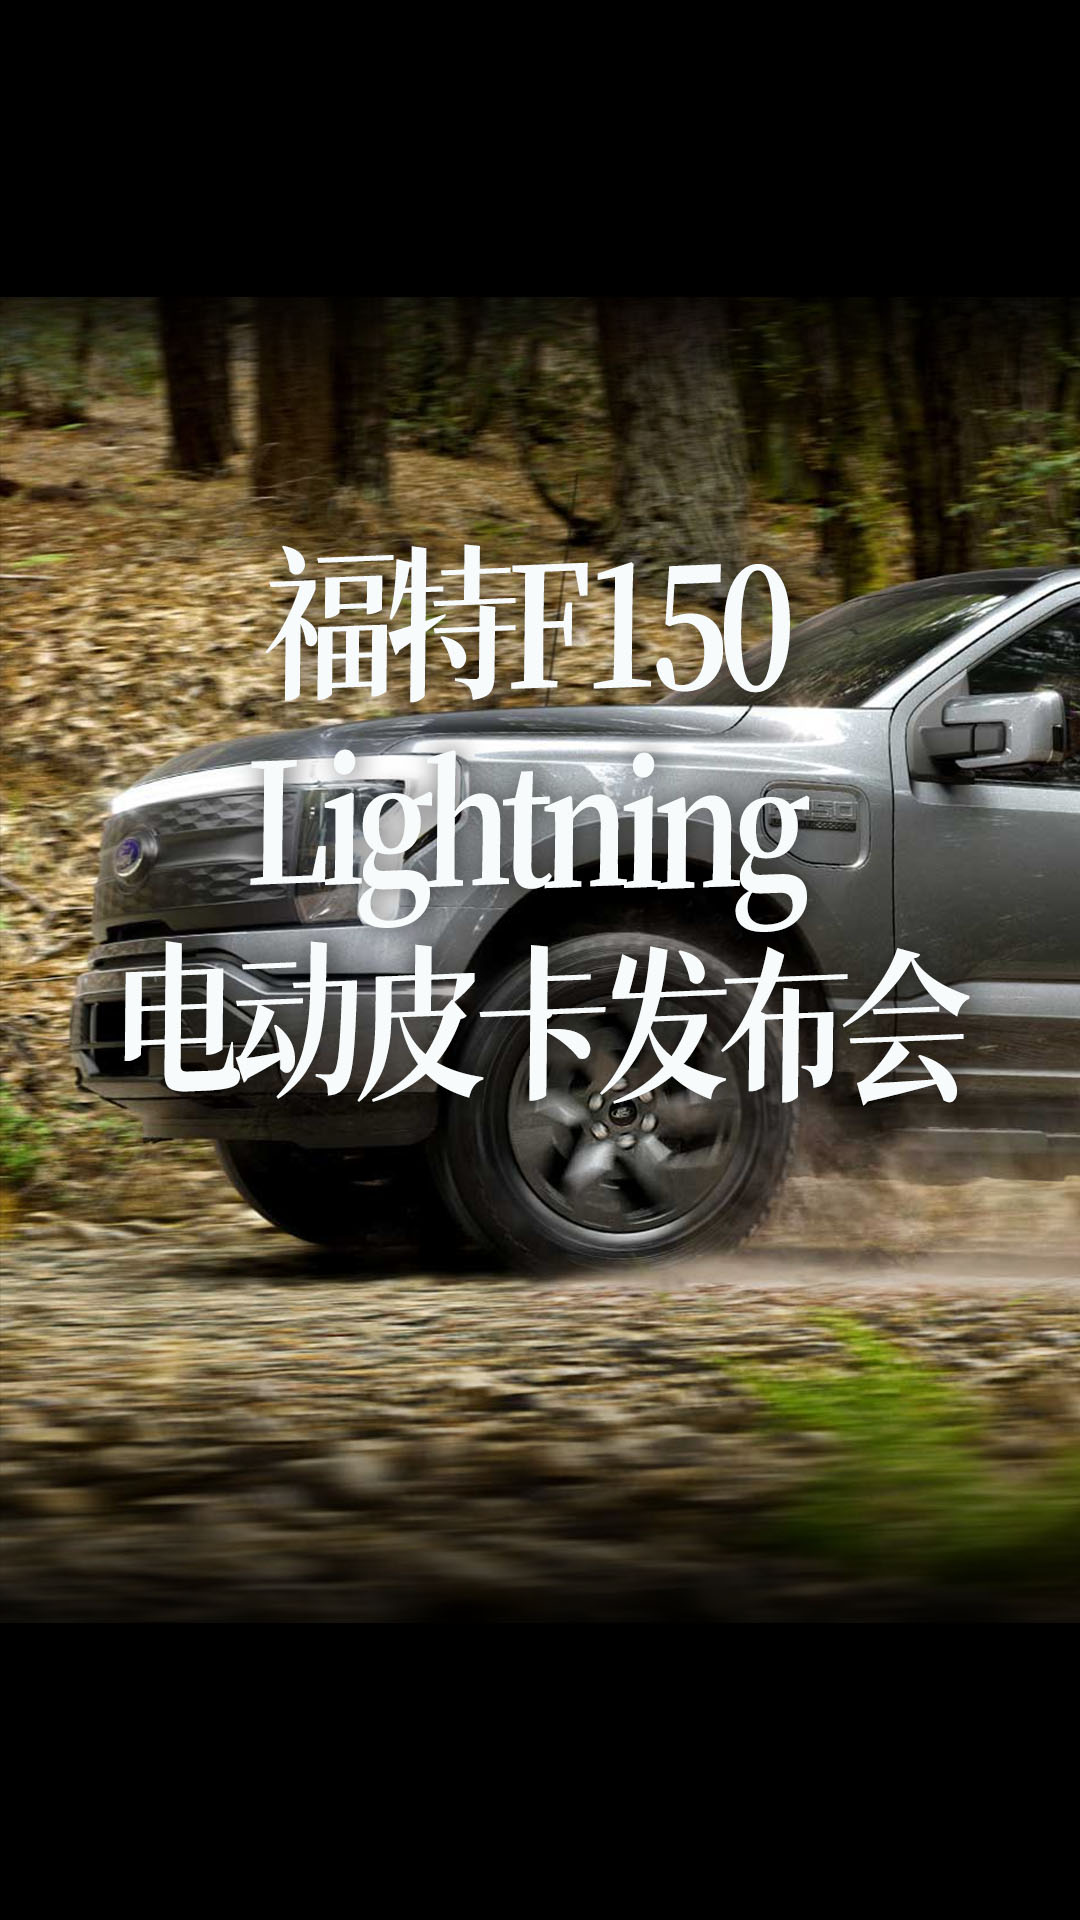 【中文字幕】福特F150 Lightning 电动皮卡发布会